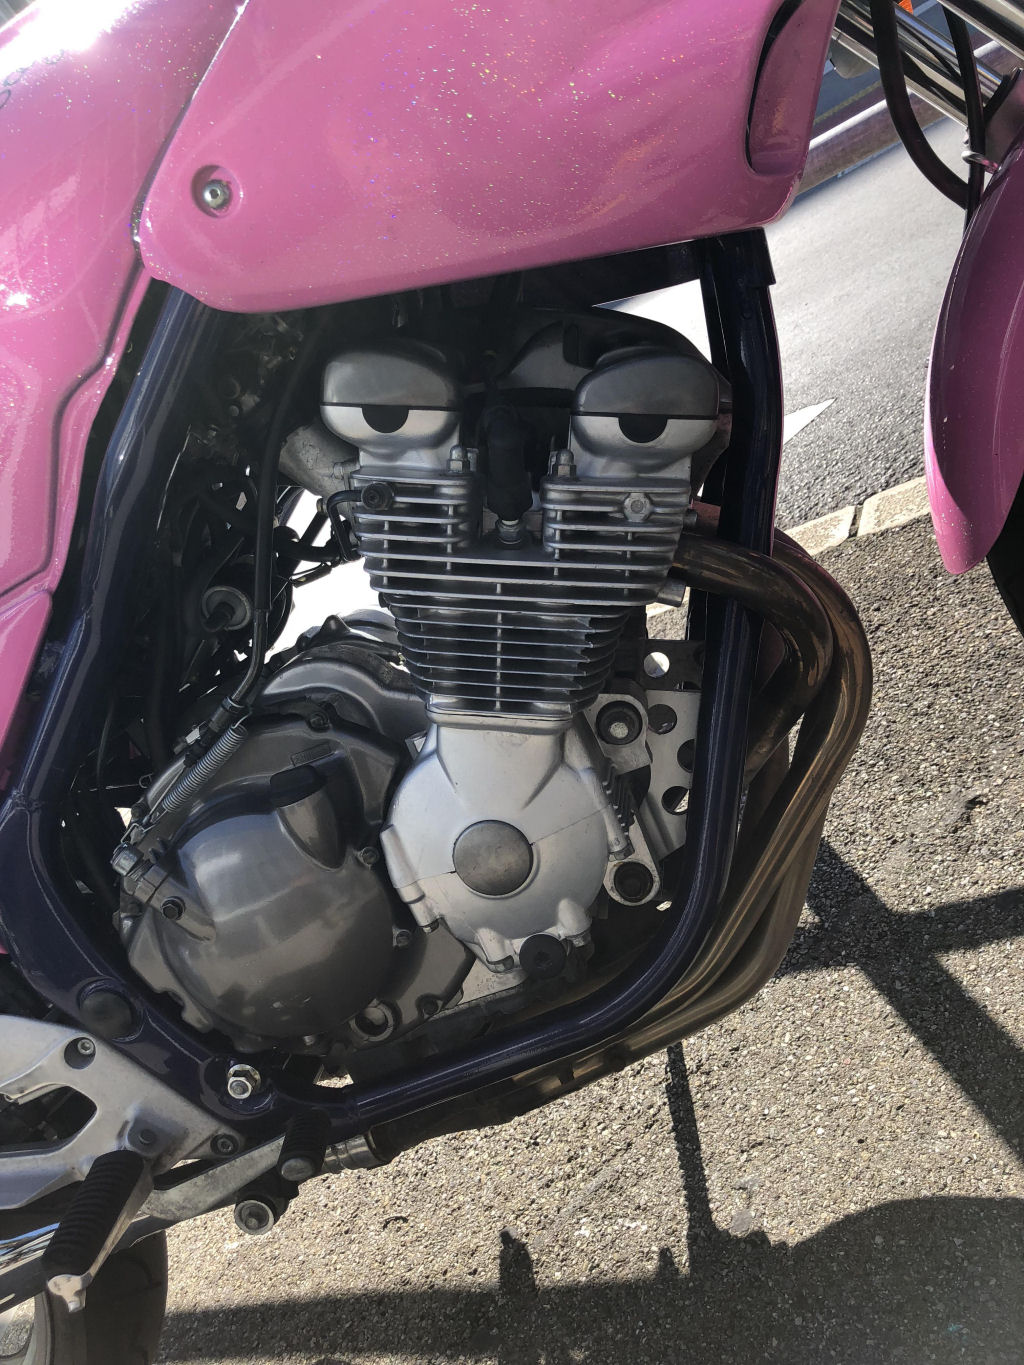 O motor desta moto parece um parente do clipe do Word.